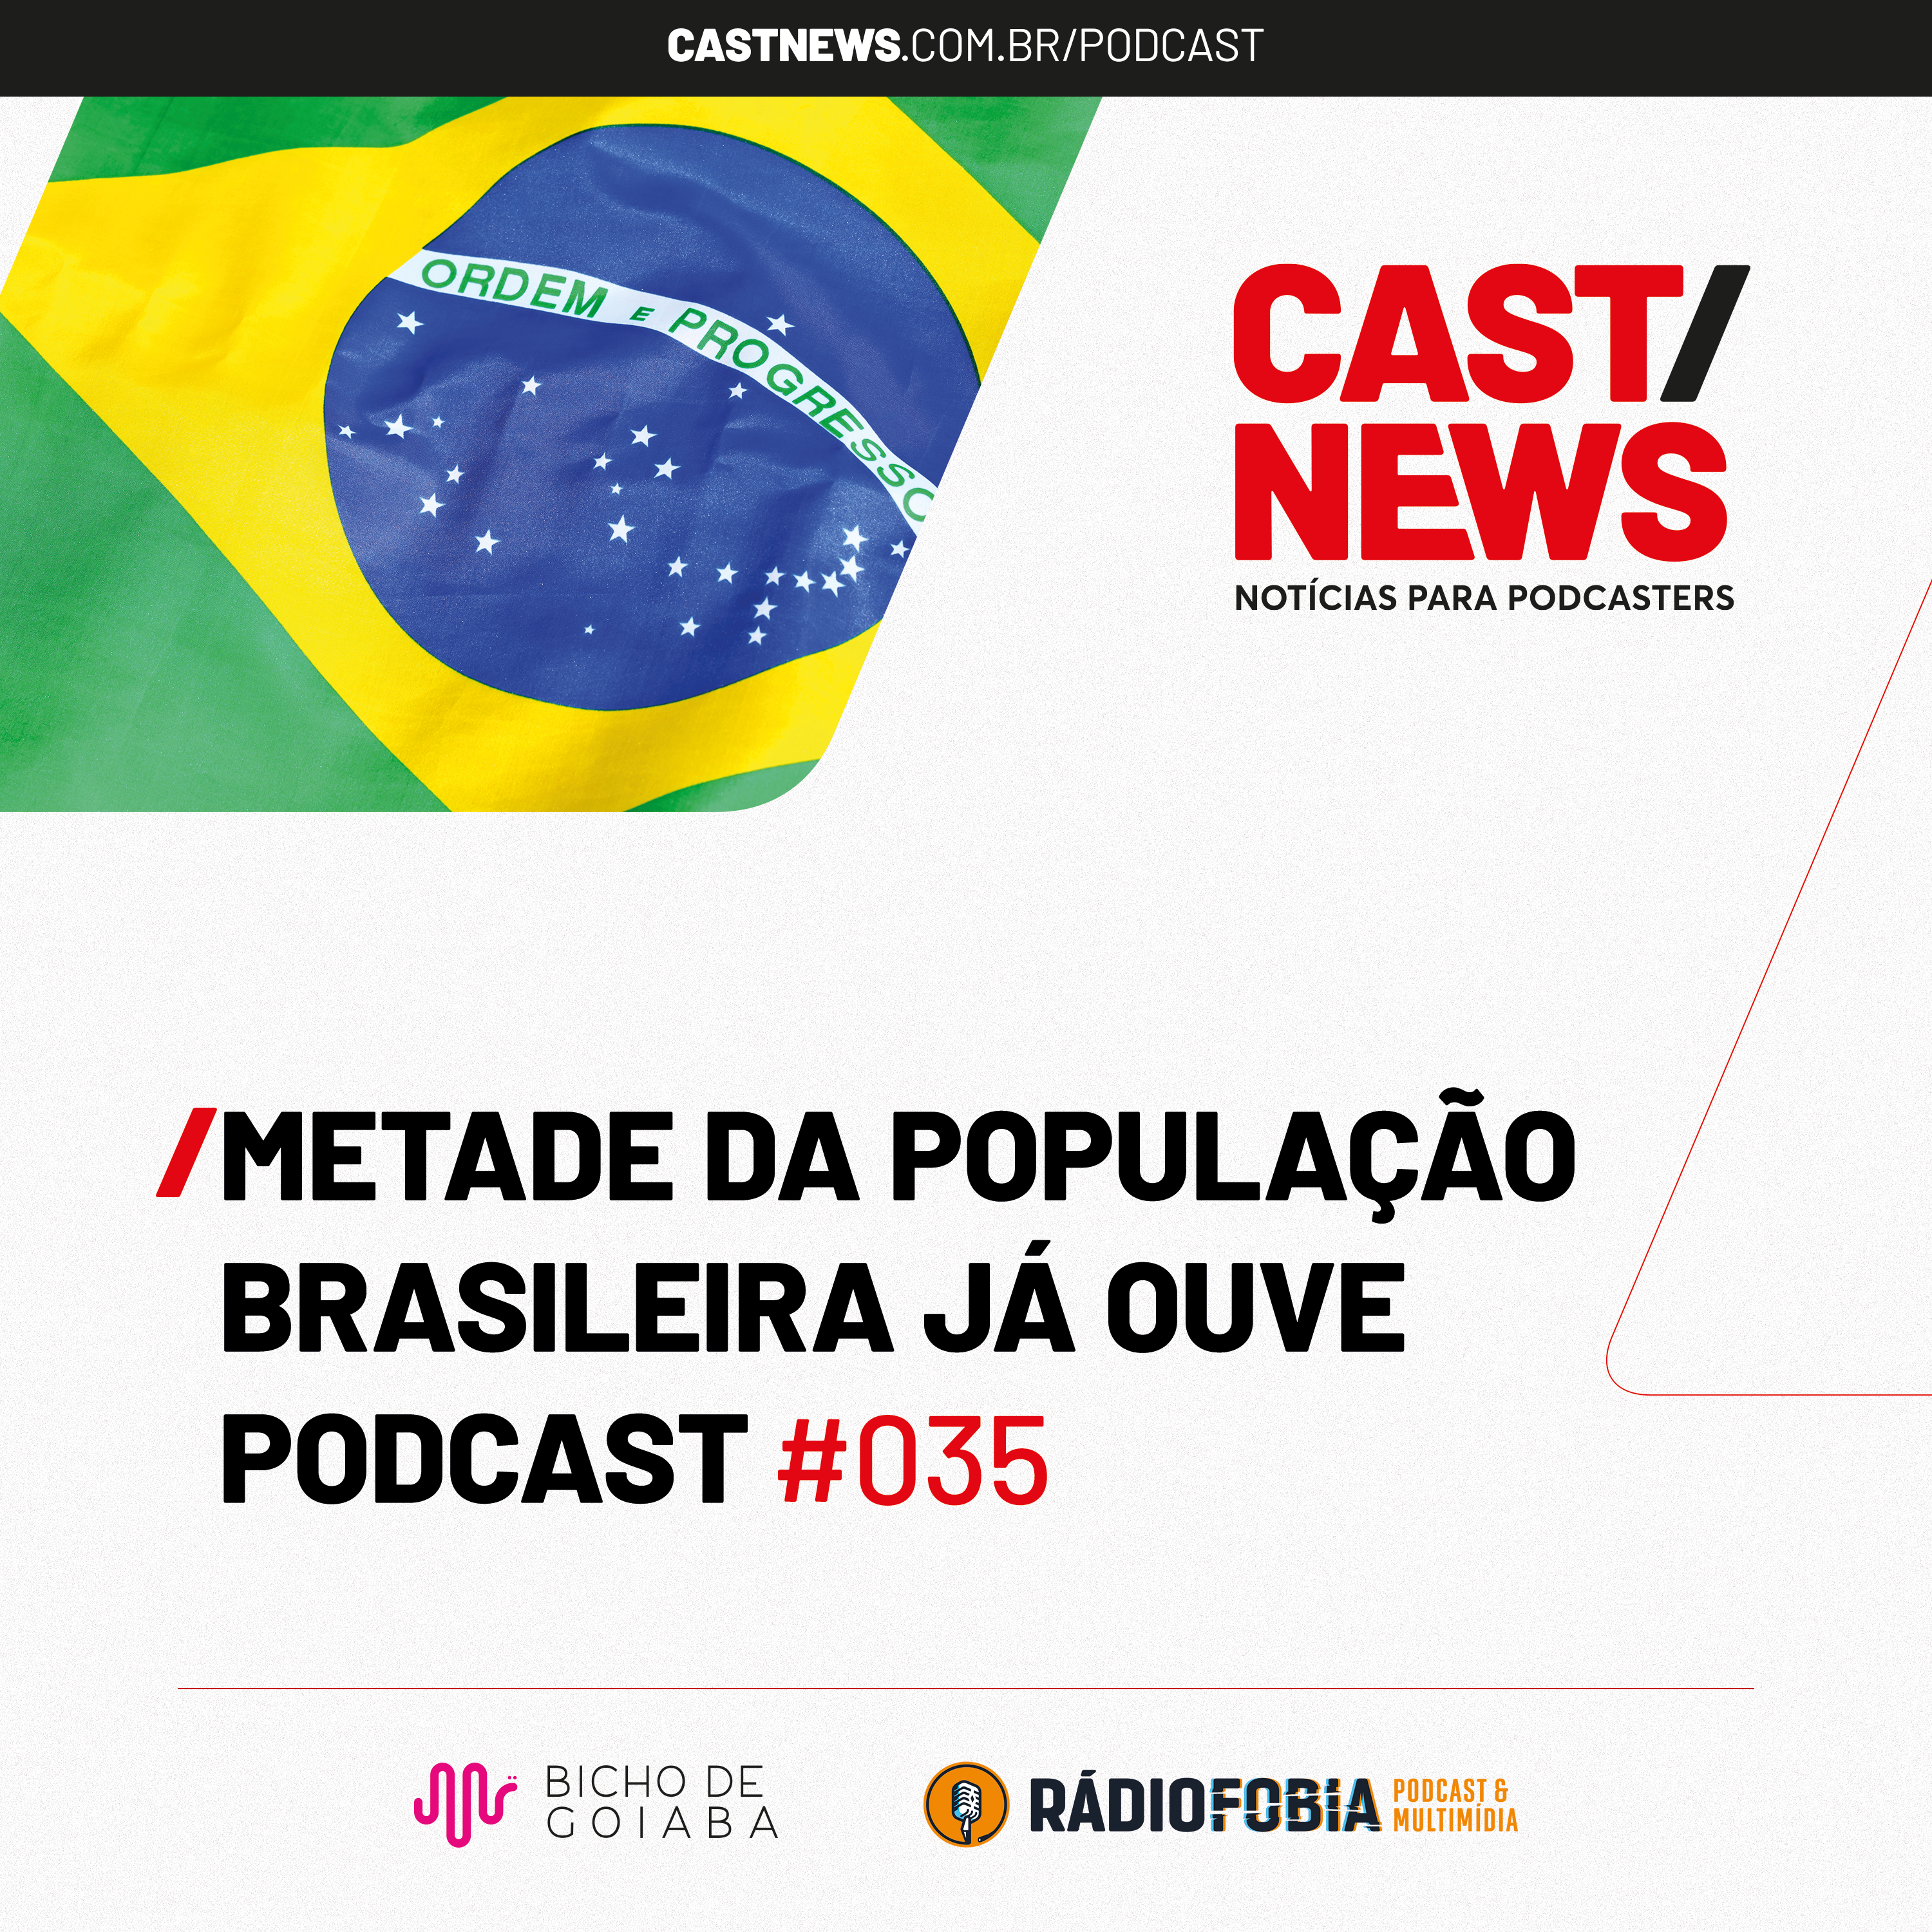 CASTNEWS #035 - Metade da população brasileira já ouve podcast